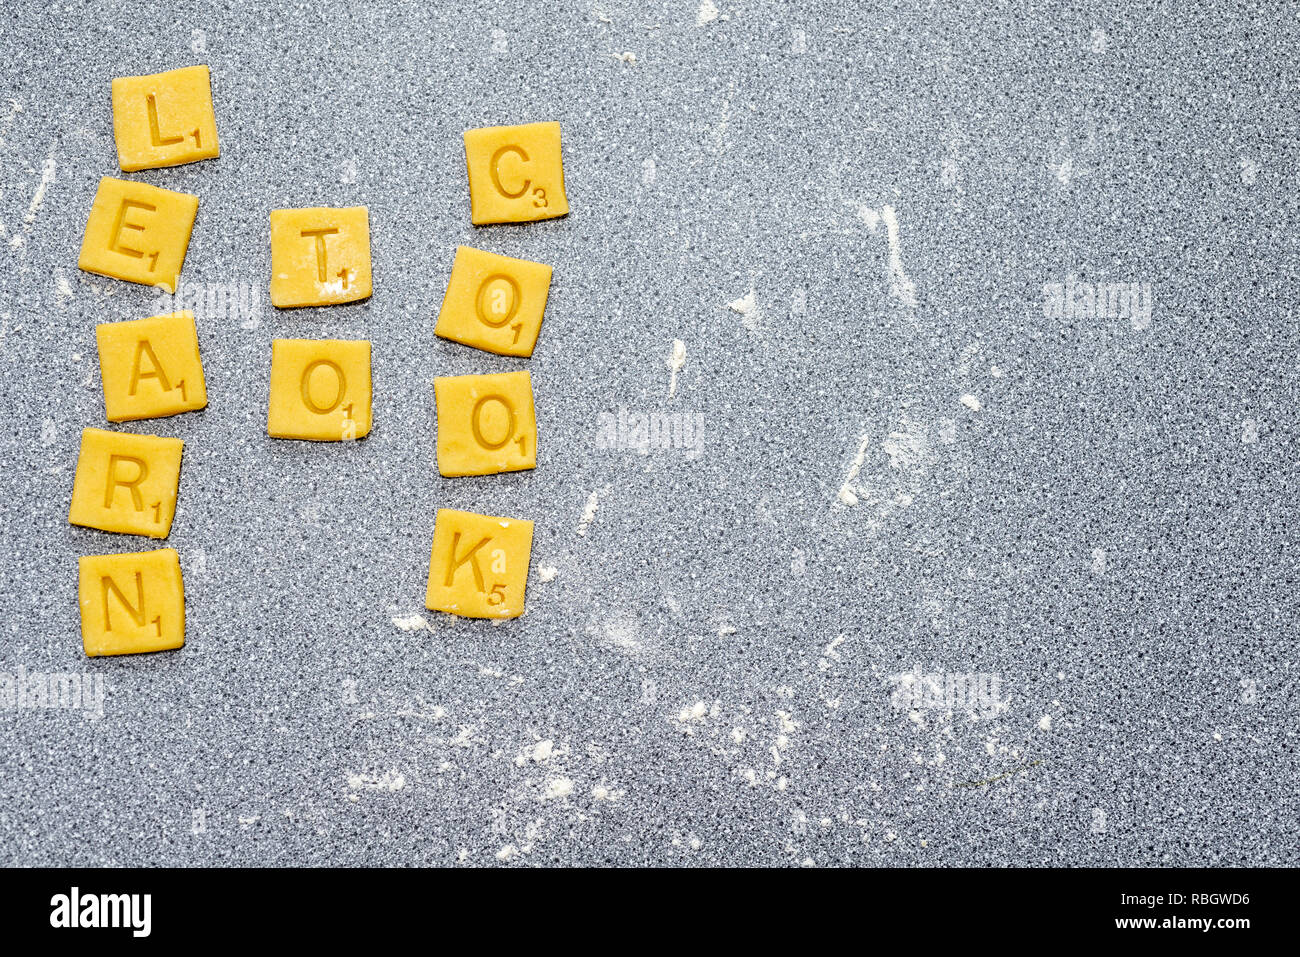 Lernen, zu kochen - scrabble Worte von Keks/Plätzchenteig. Stockfoto